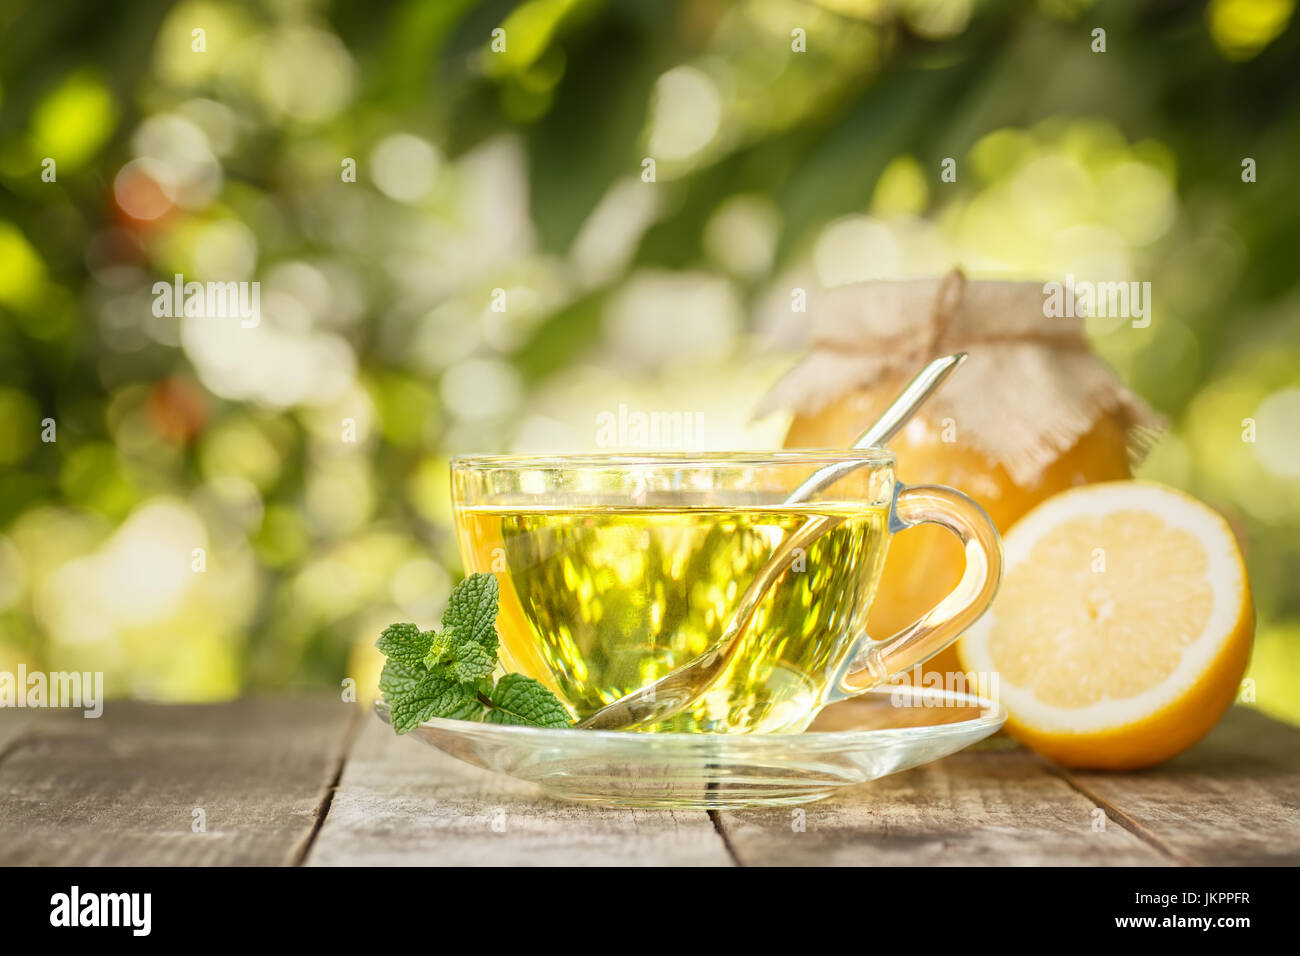 mint tea on table Stock Photo